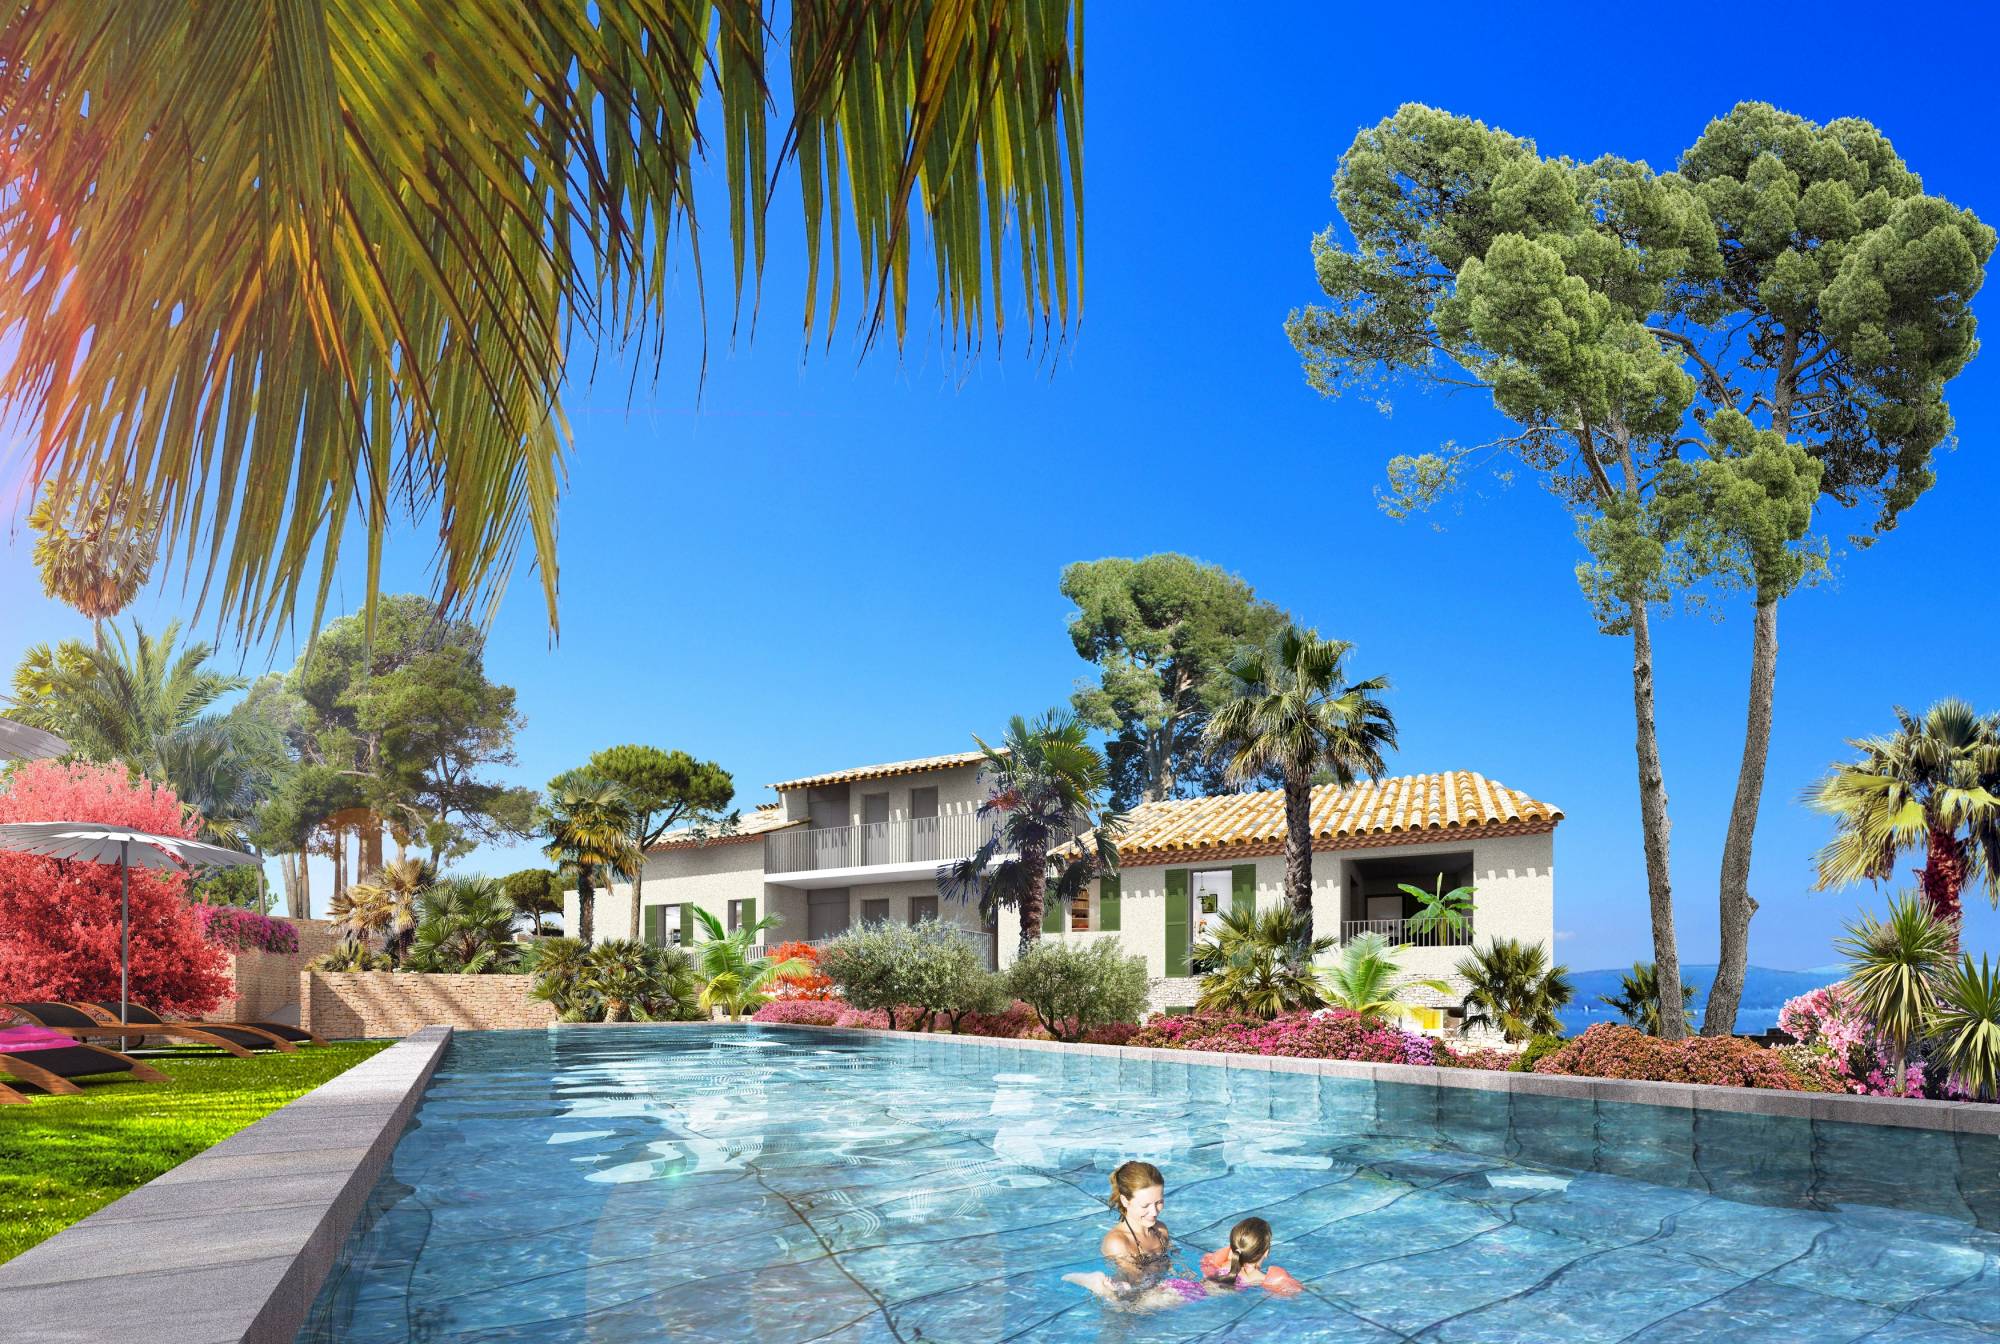 Résidence avec piscine dans le Golfe de Saint-Tropez